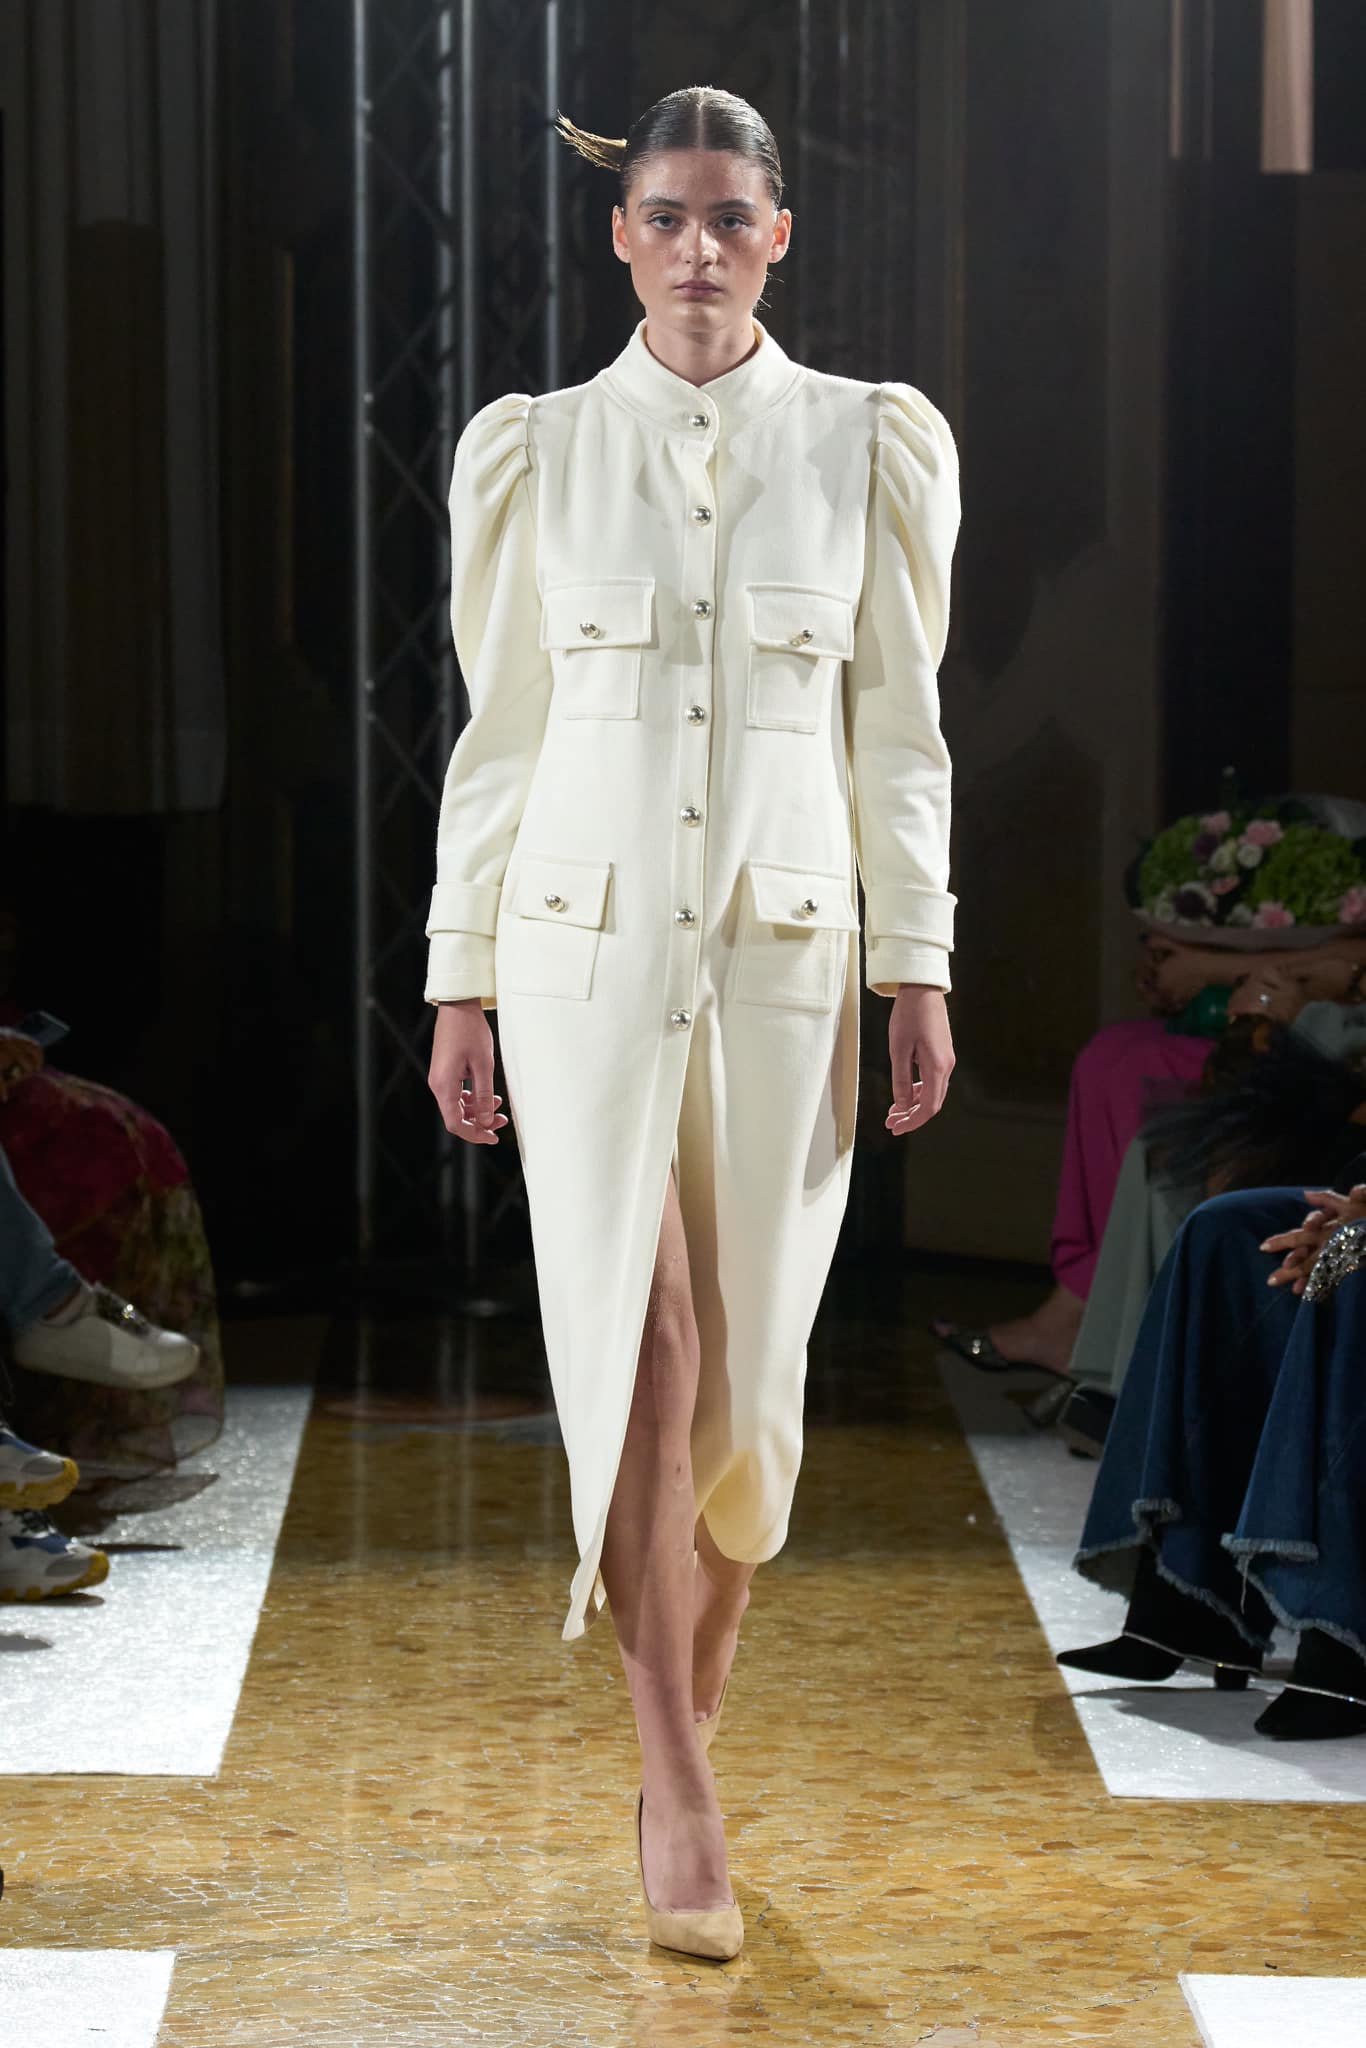 ANOVI predstavila novu kolekciju na Milanskom tjednu mode u sklopu platforme Emerging Talents Milan